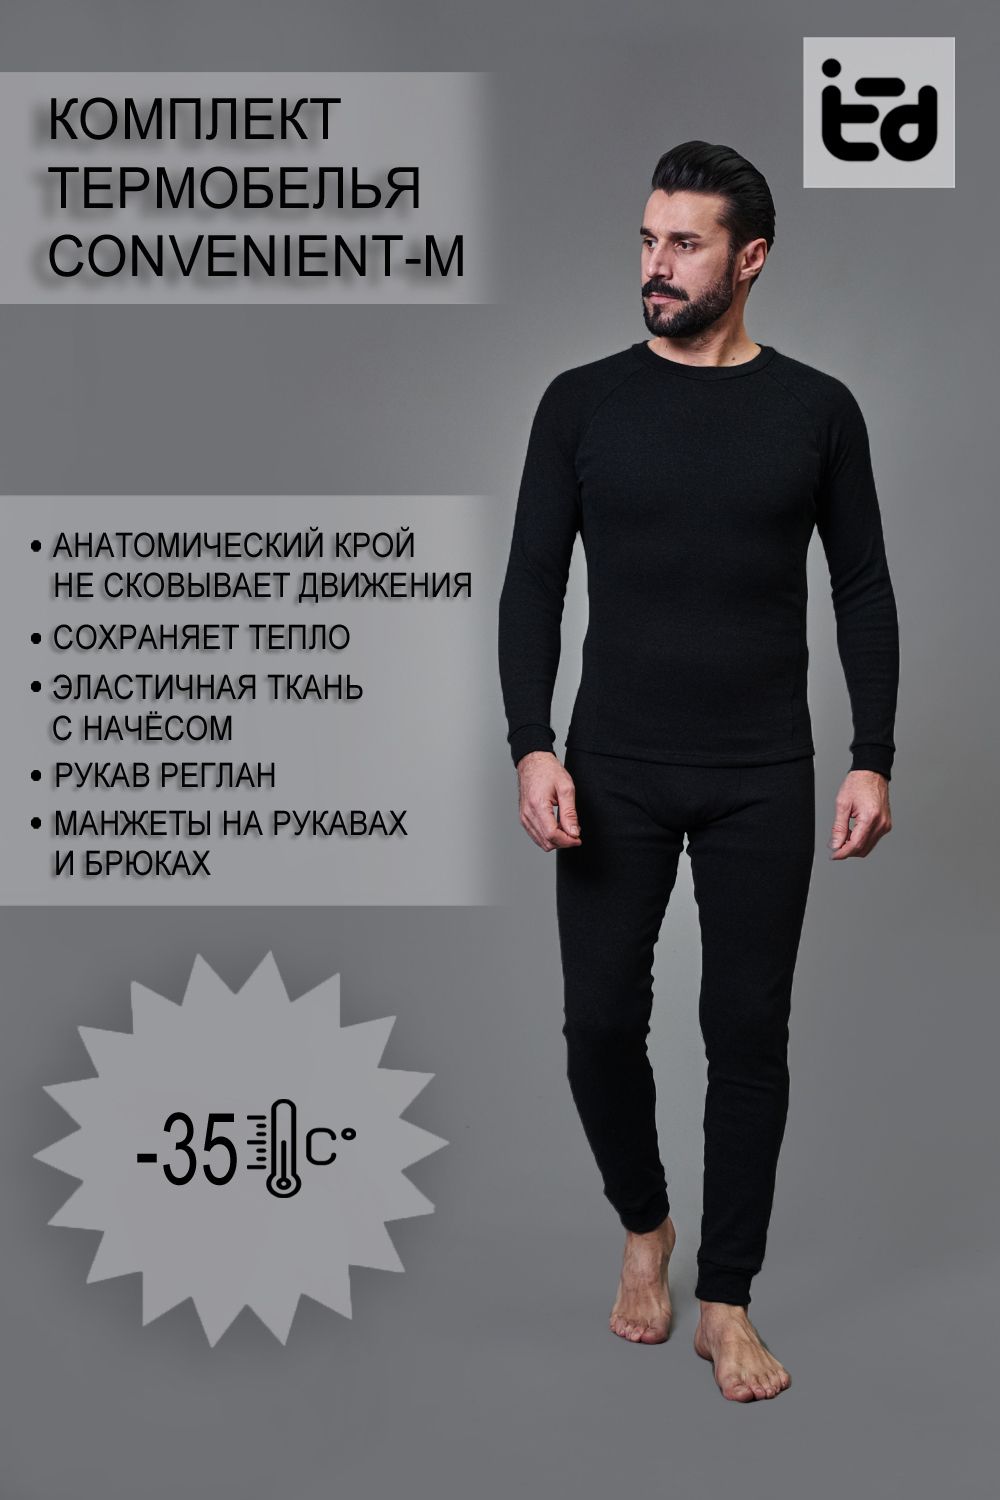 Термокомплект Convenient-M брюки+лонгслив - черный